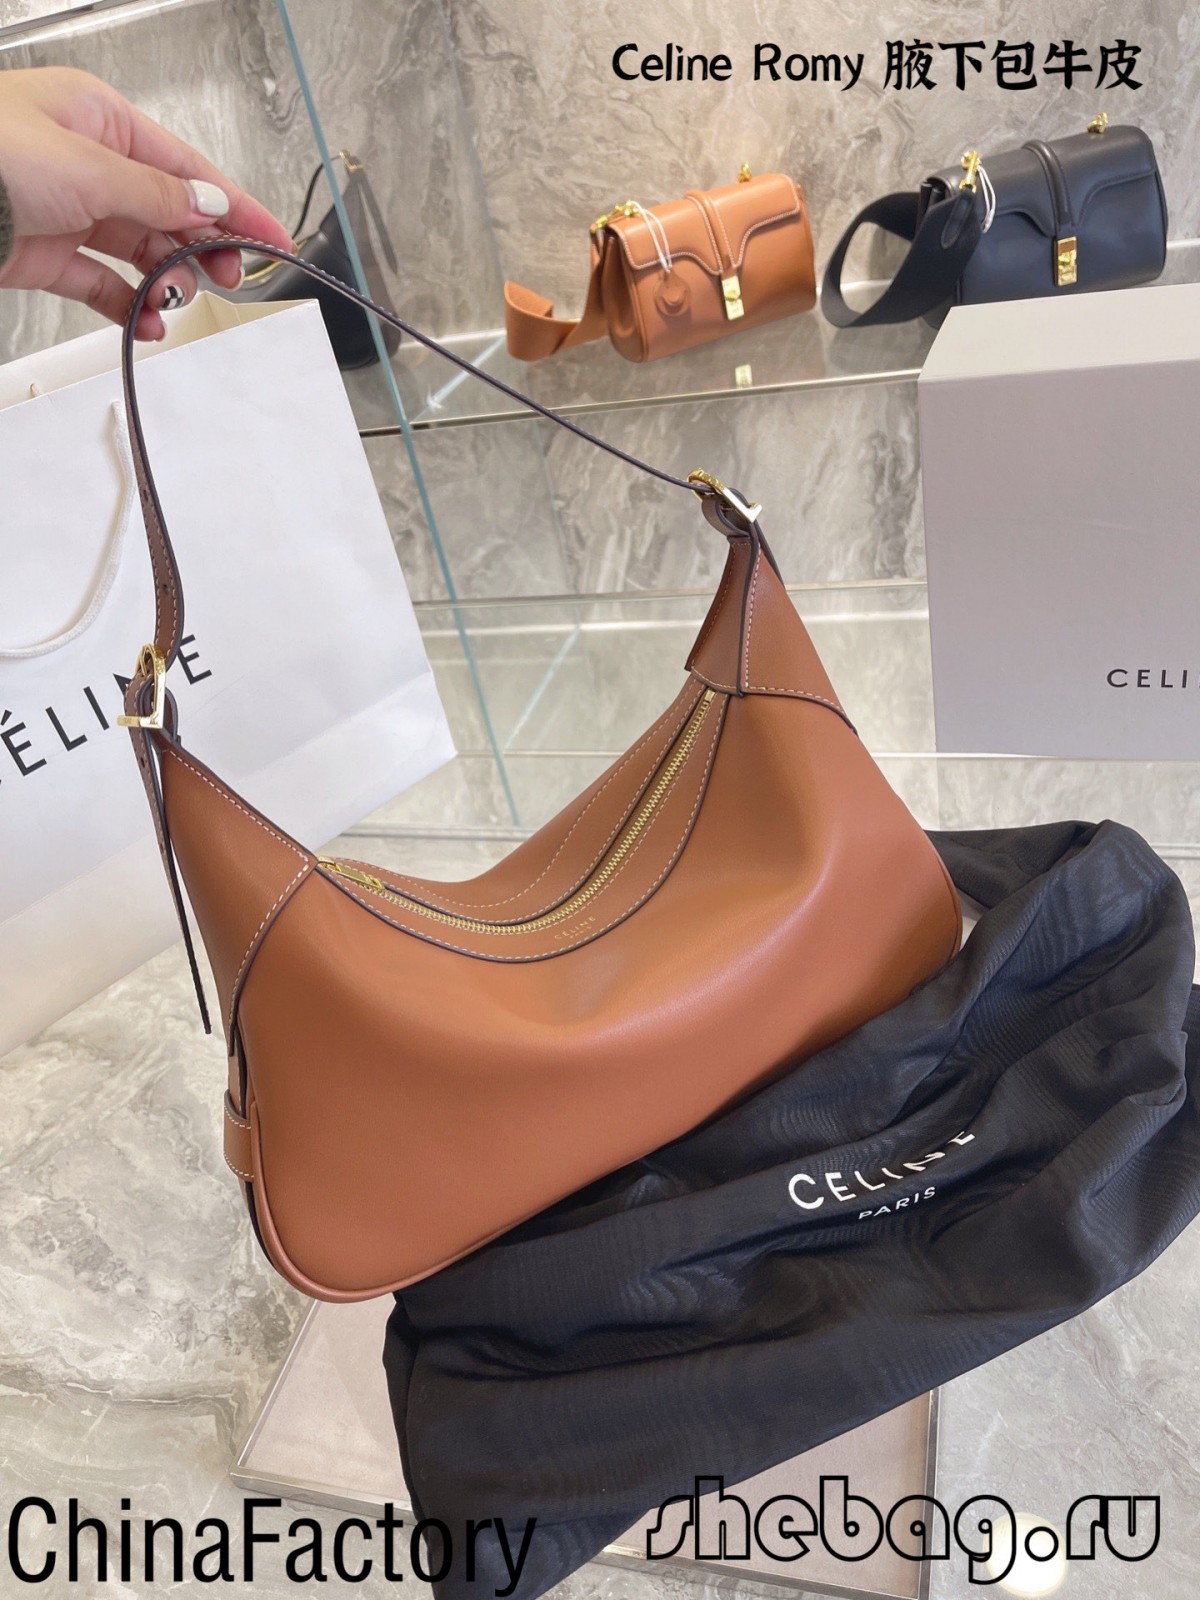 Best replica celine bags reviews: Celine Romy (2022 edition)-Best Quality Fake designer Bag Review, Replica designer bag ru